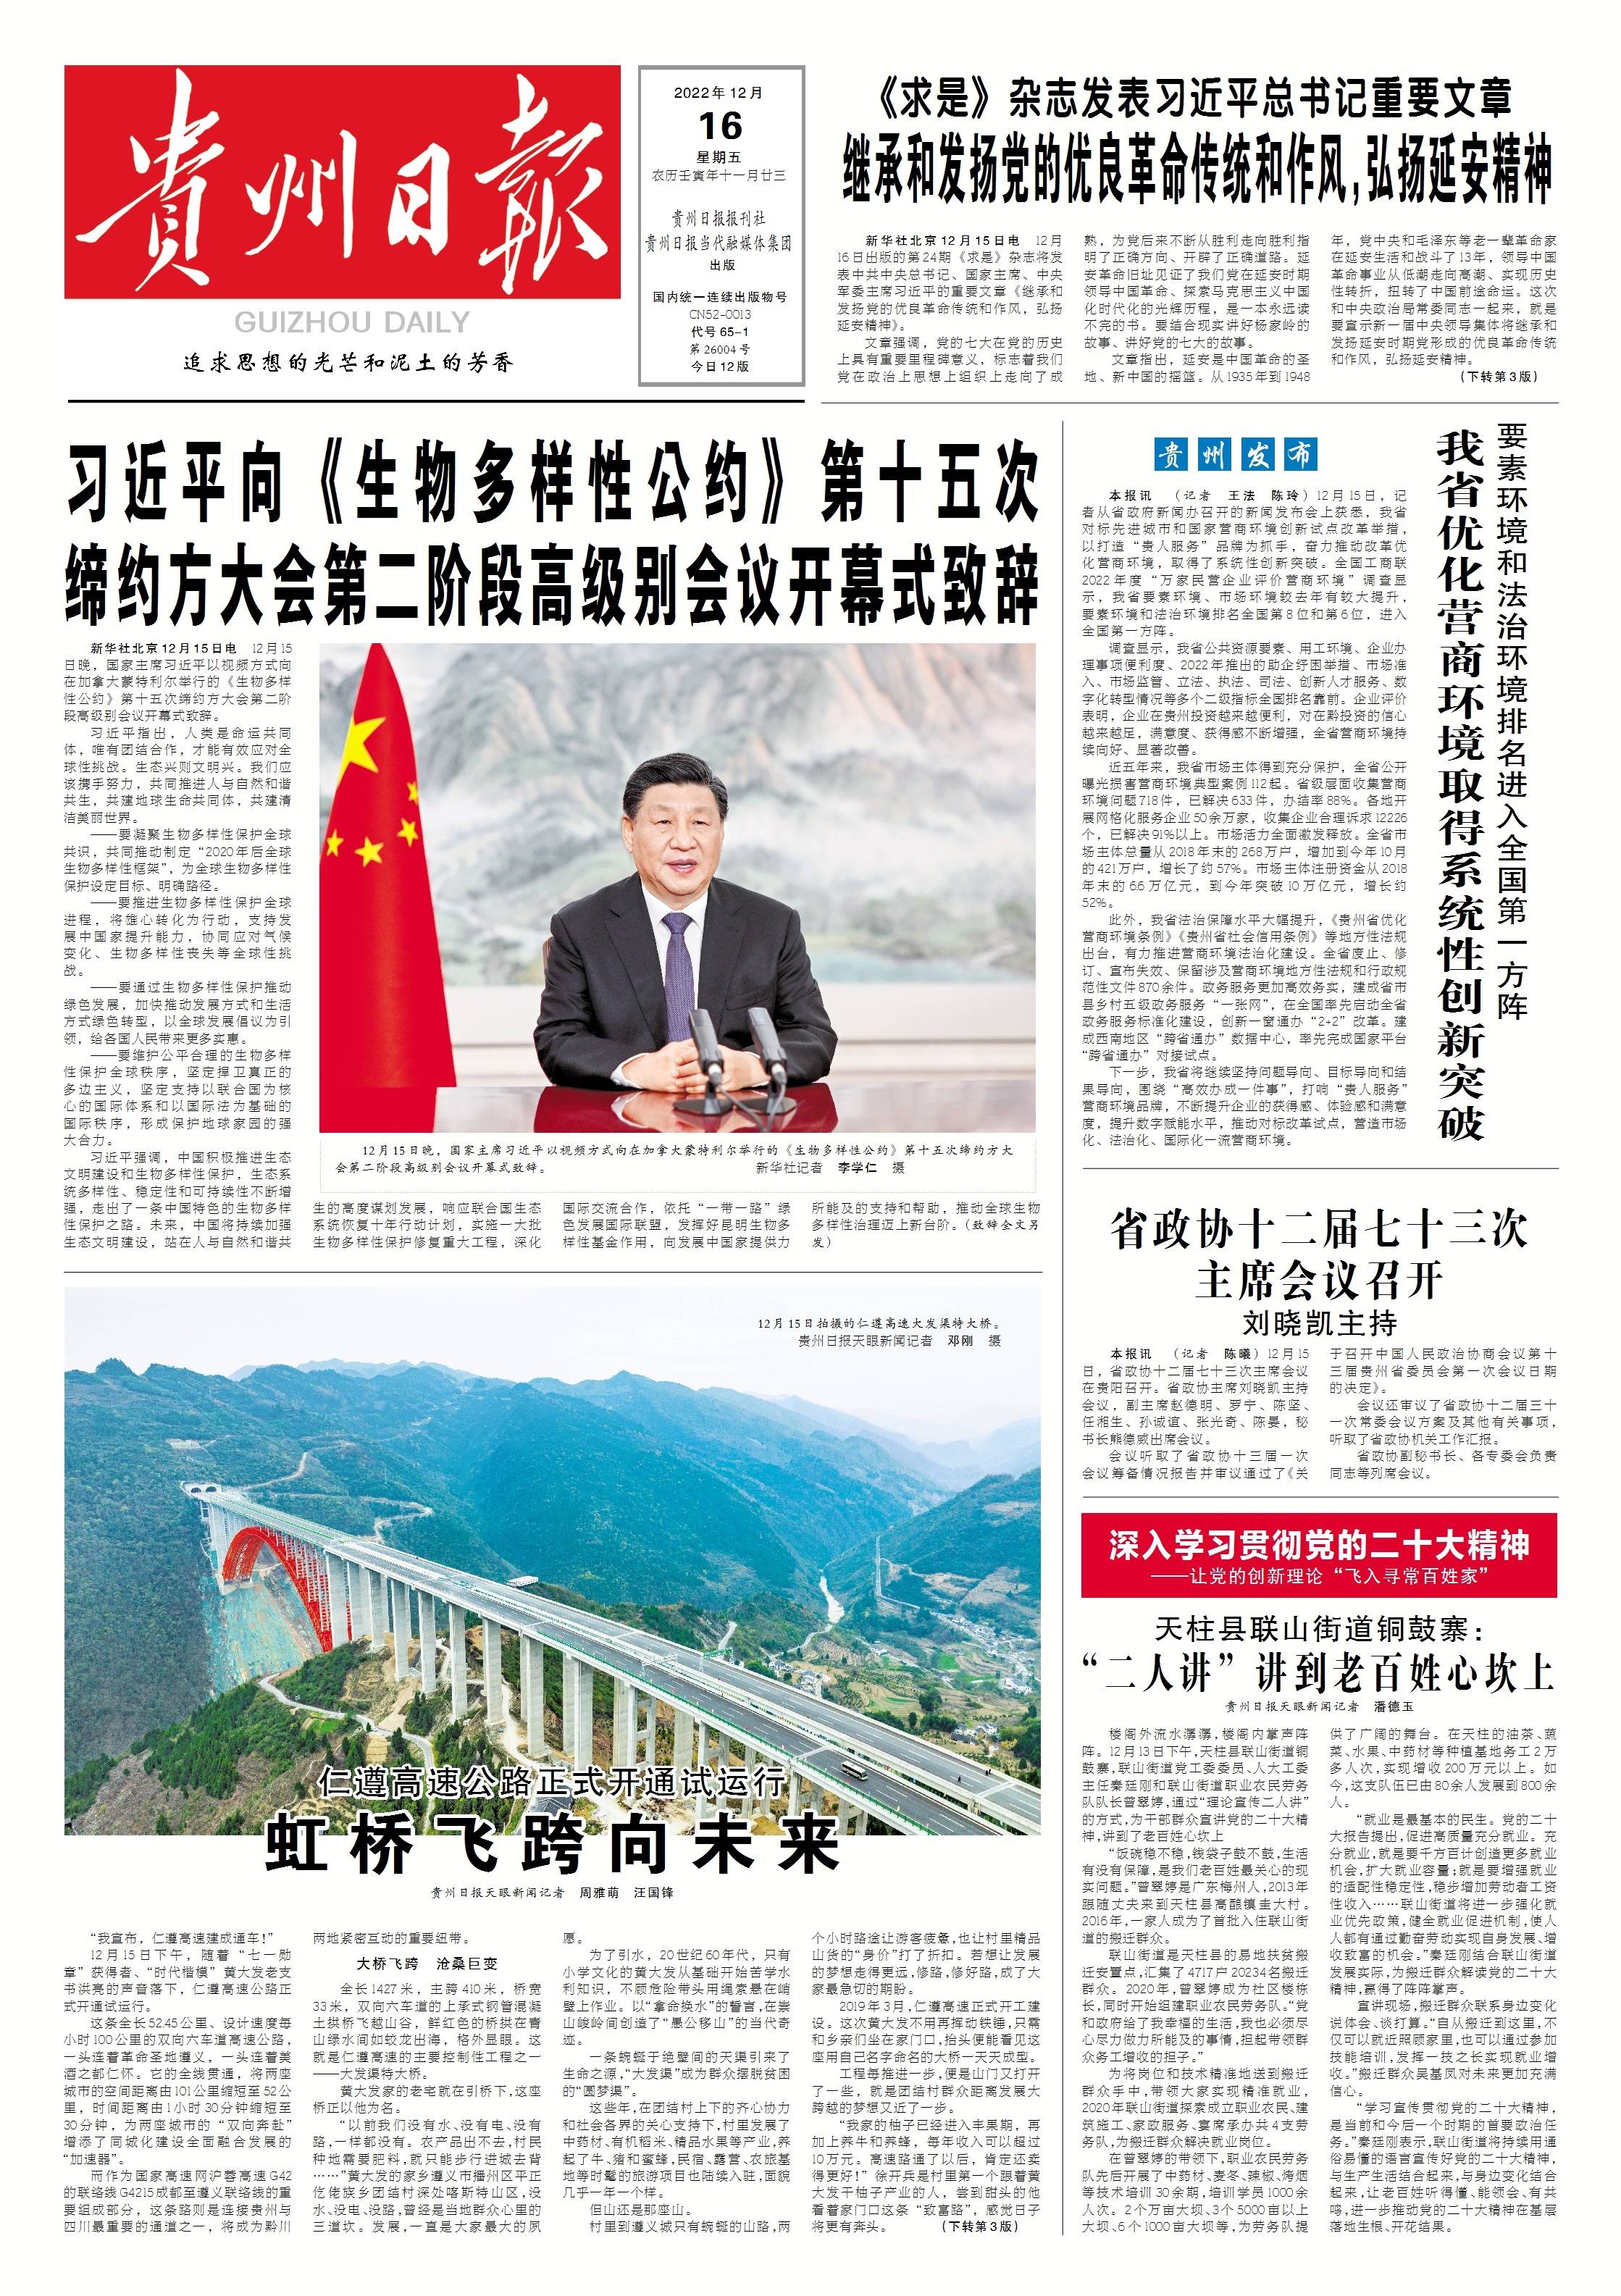 2月15日，贵州日报微报来了_芬芳_来源_图片